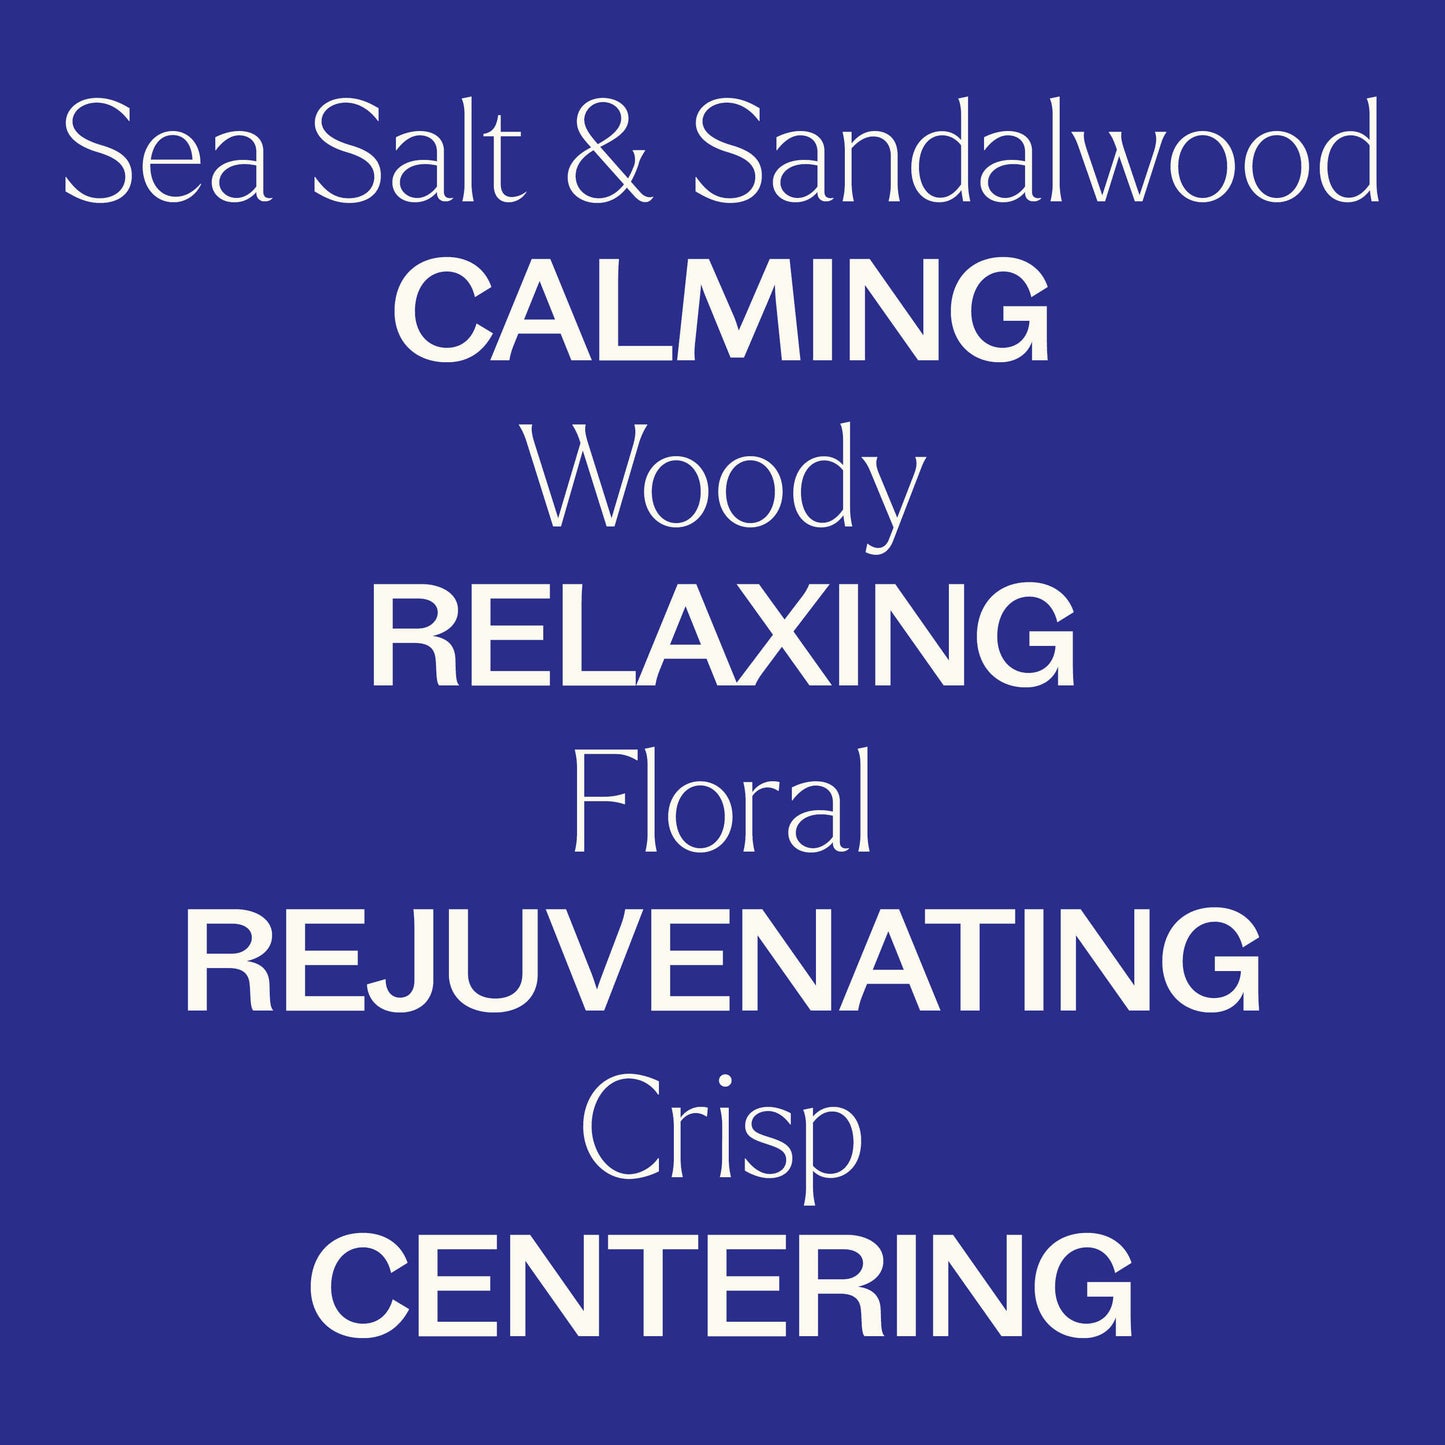 Sea Salt & Sandalwood Essential Oil Blend